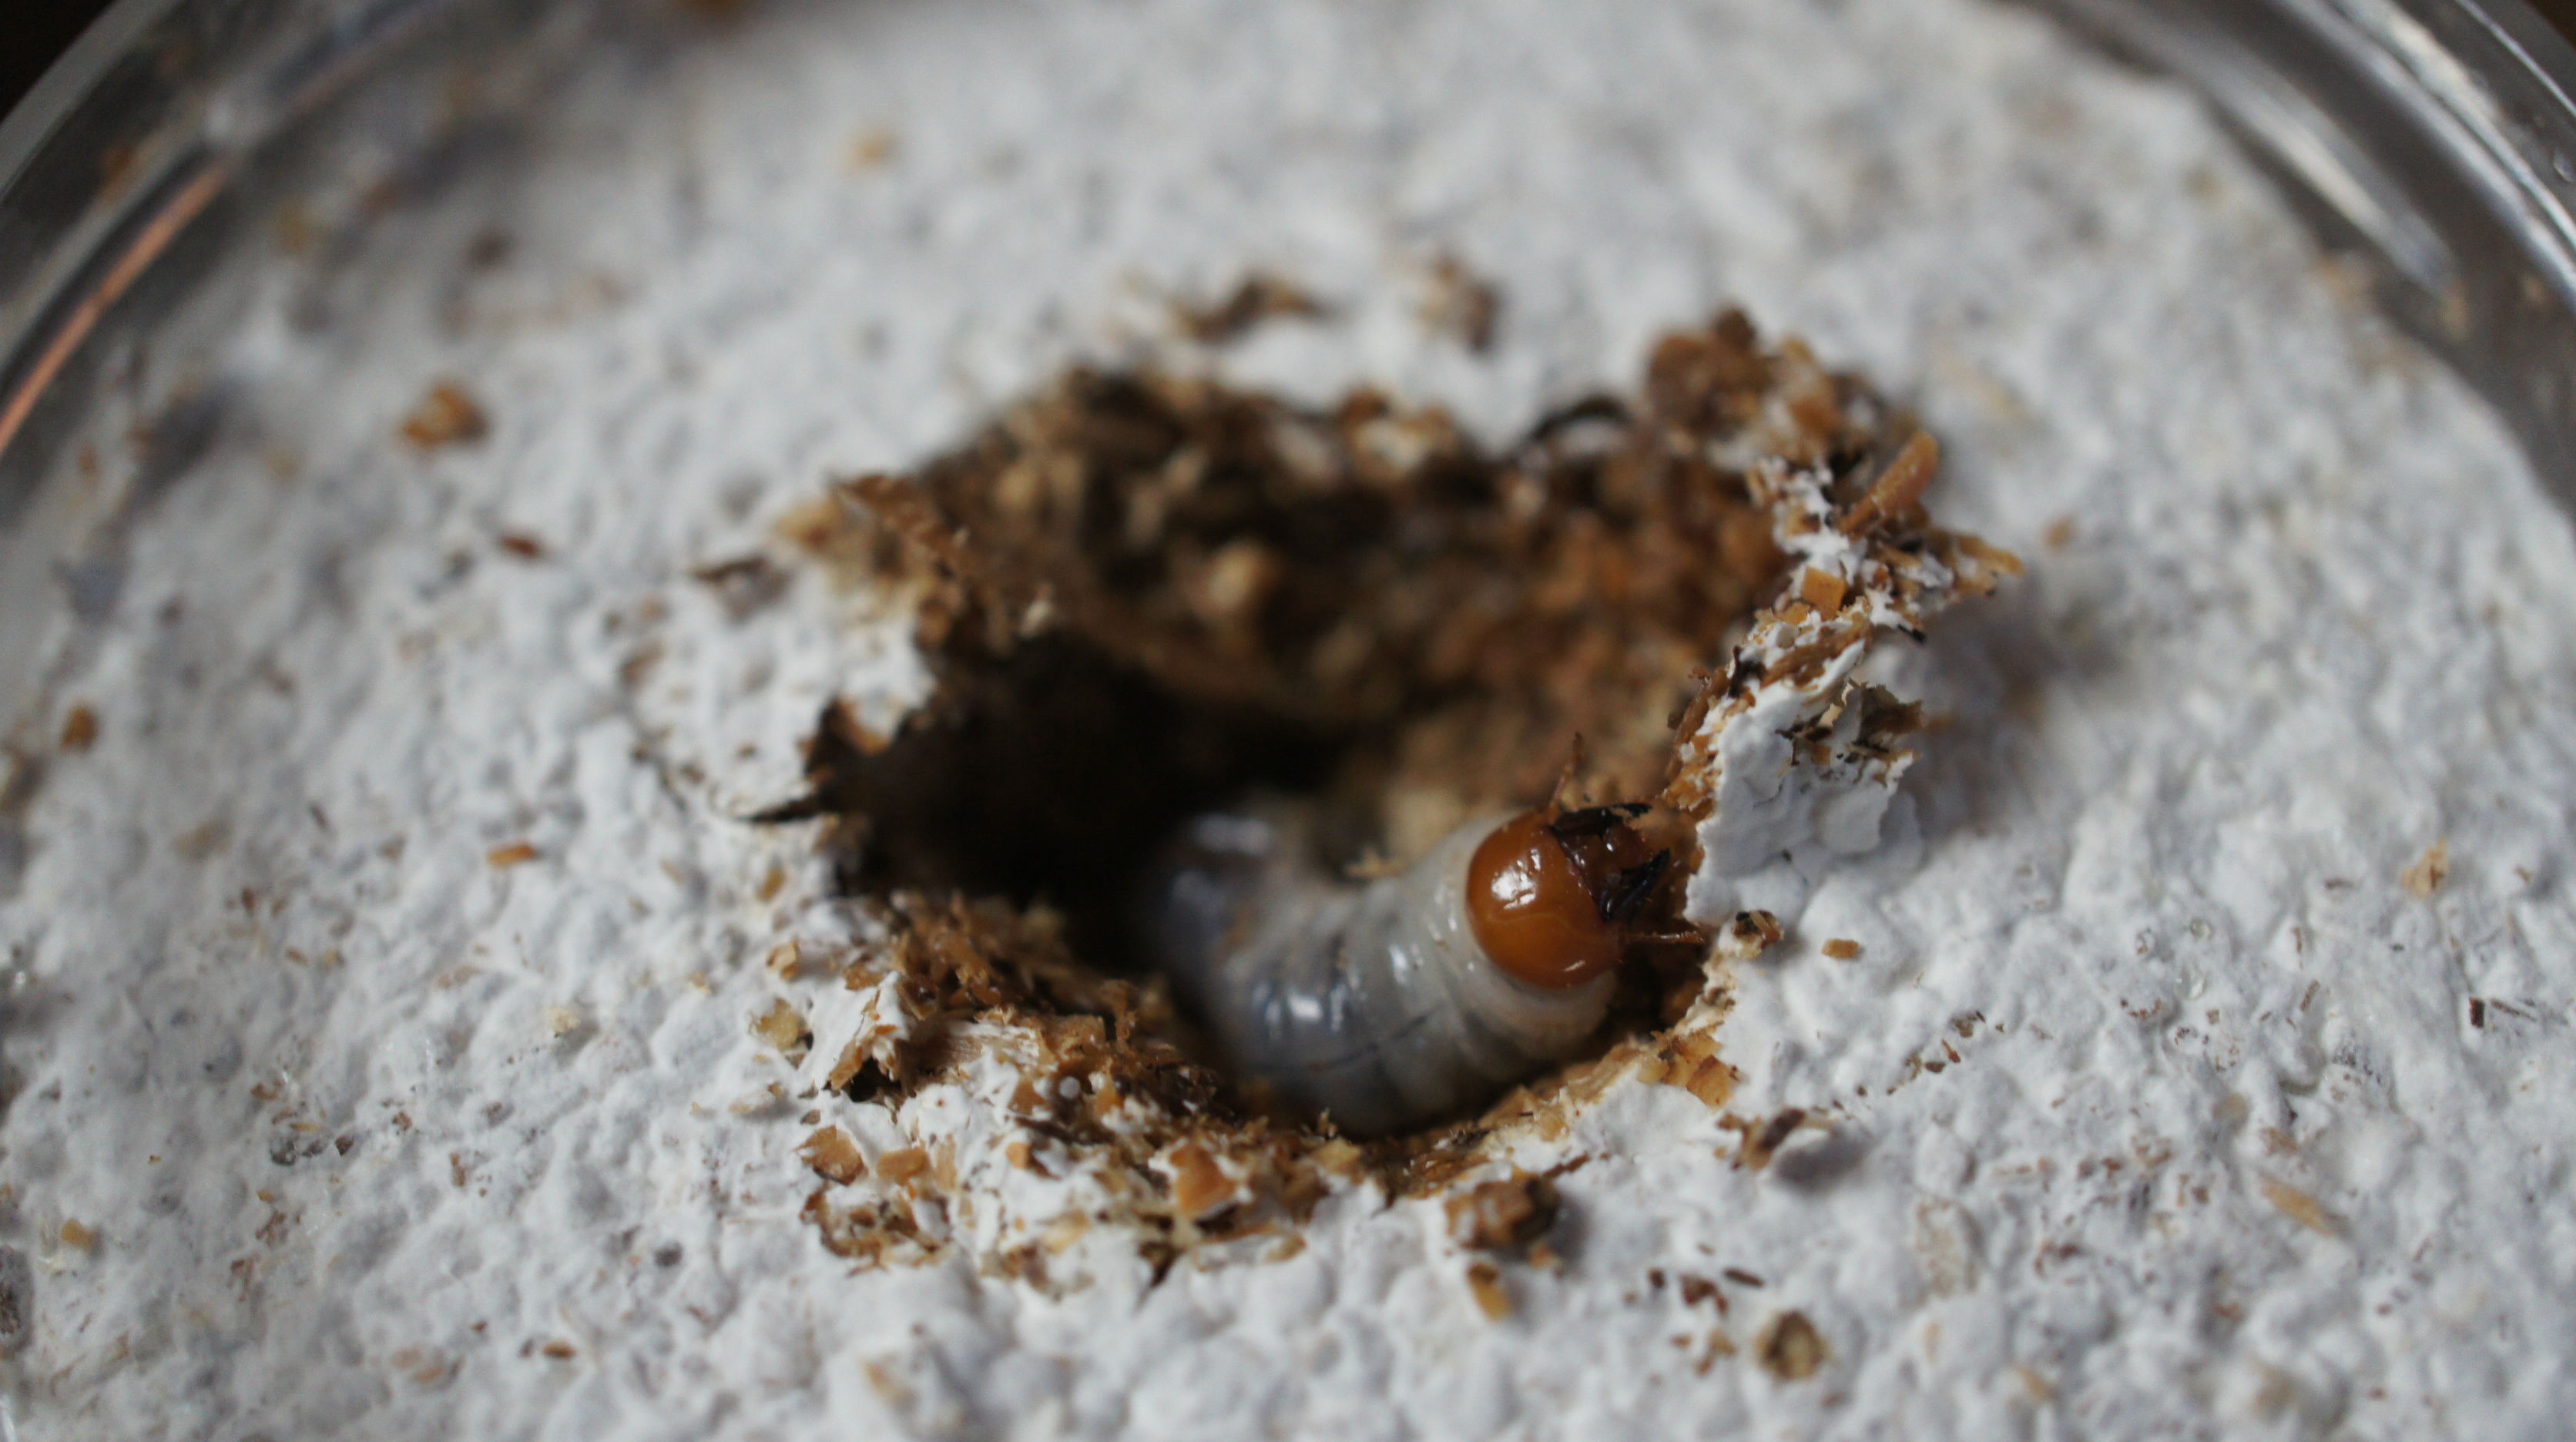 佐渡産オオクワガタの幼虫を菌糸ビン飼育 | 旅館番頭の佐渡観光情報ブログ